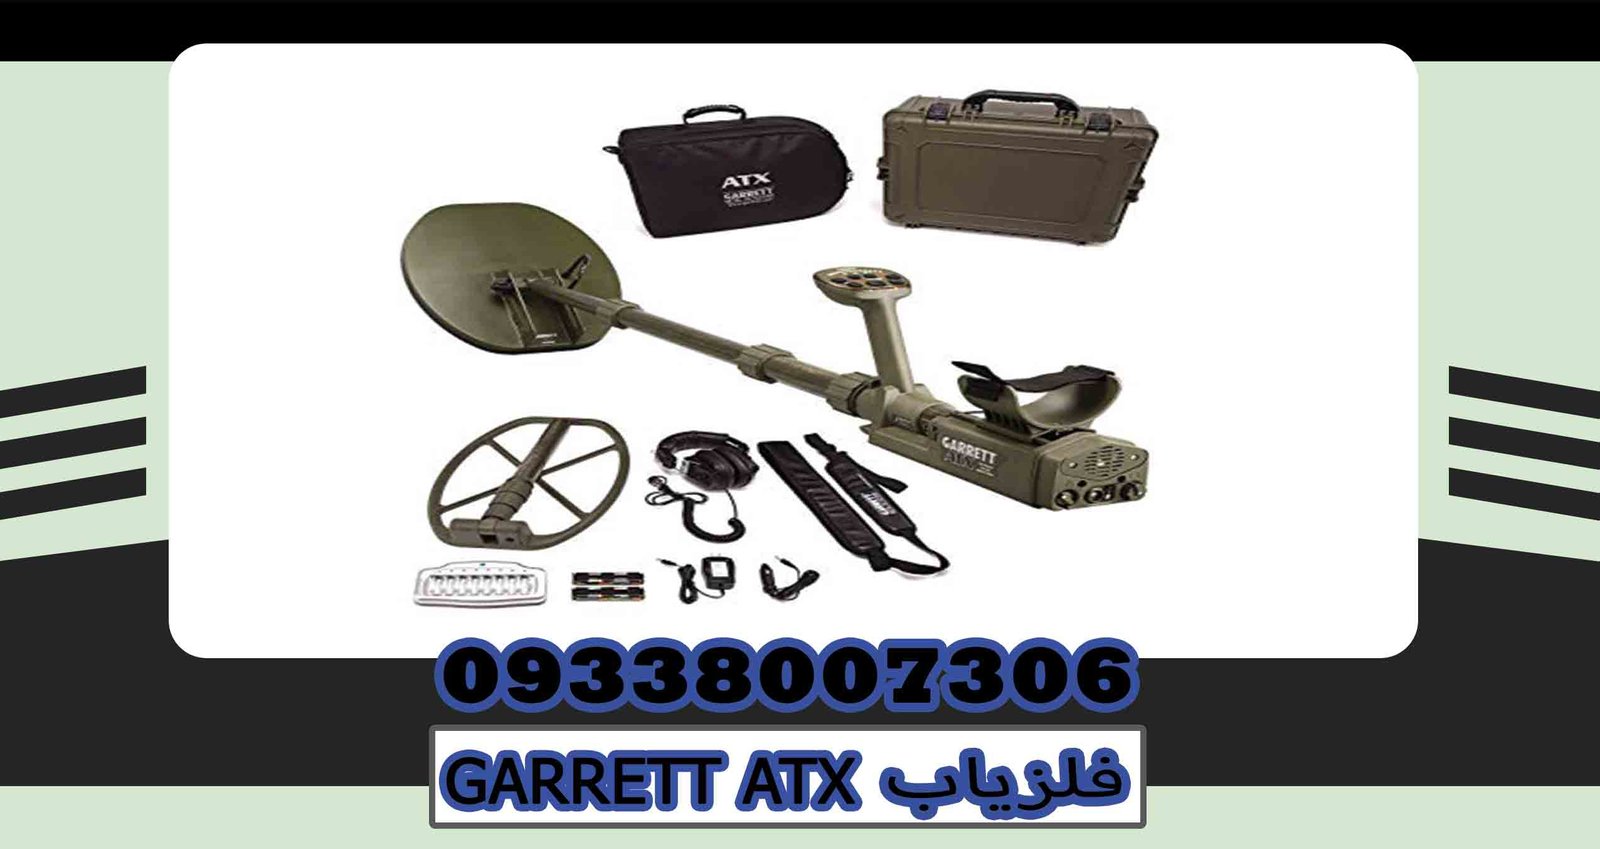 GARRETT-ATX.4786